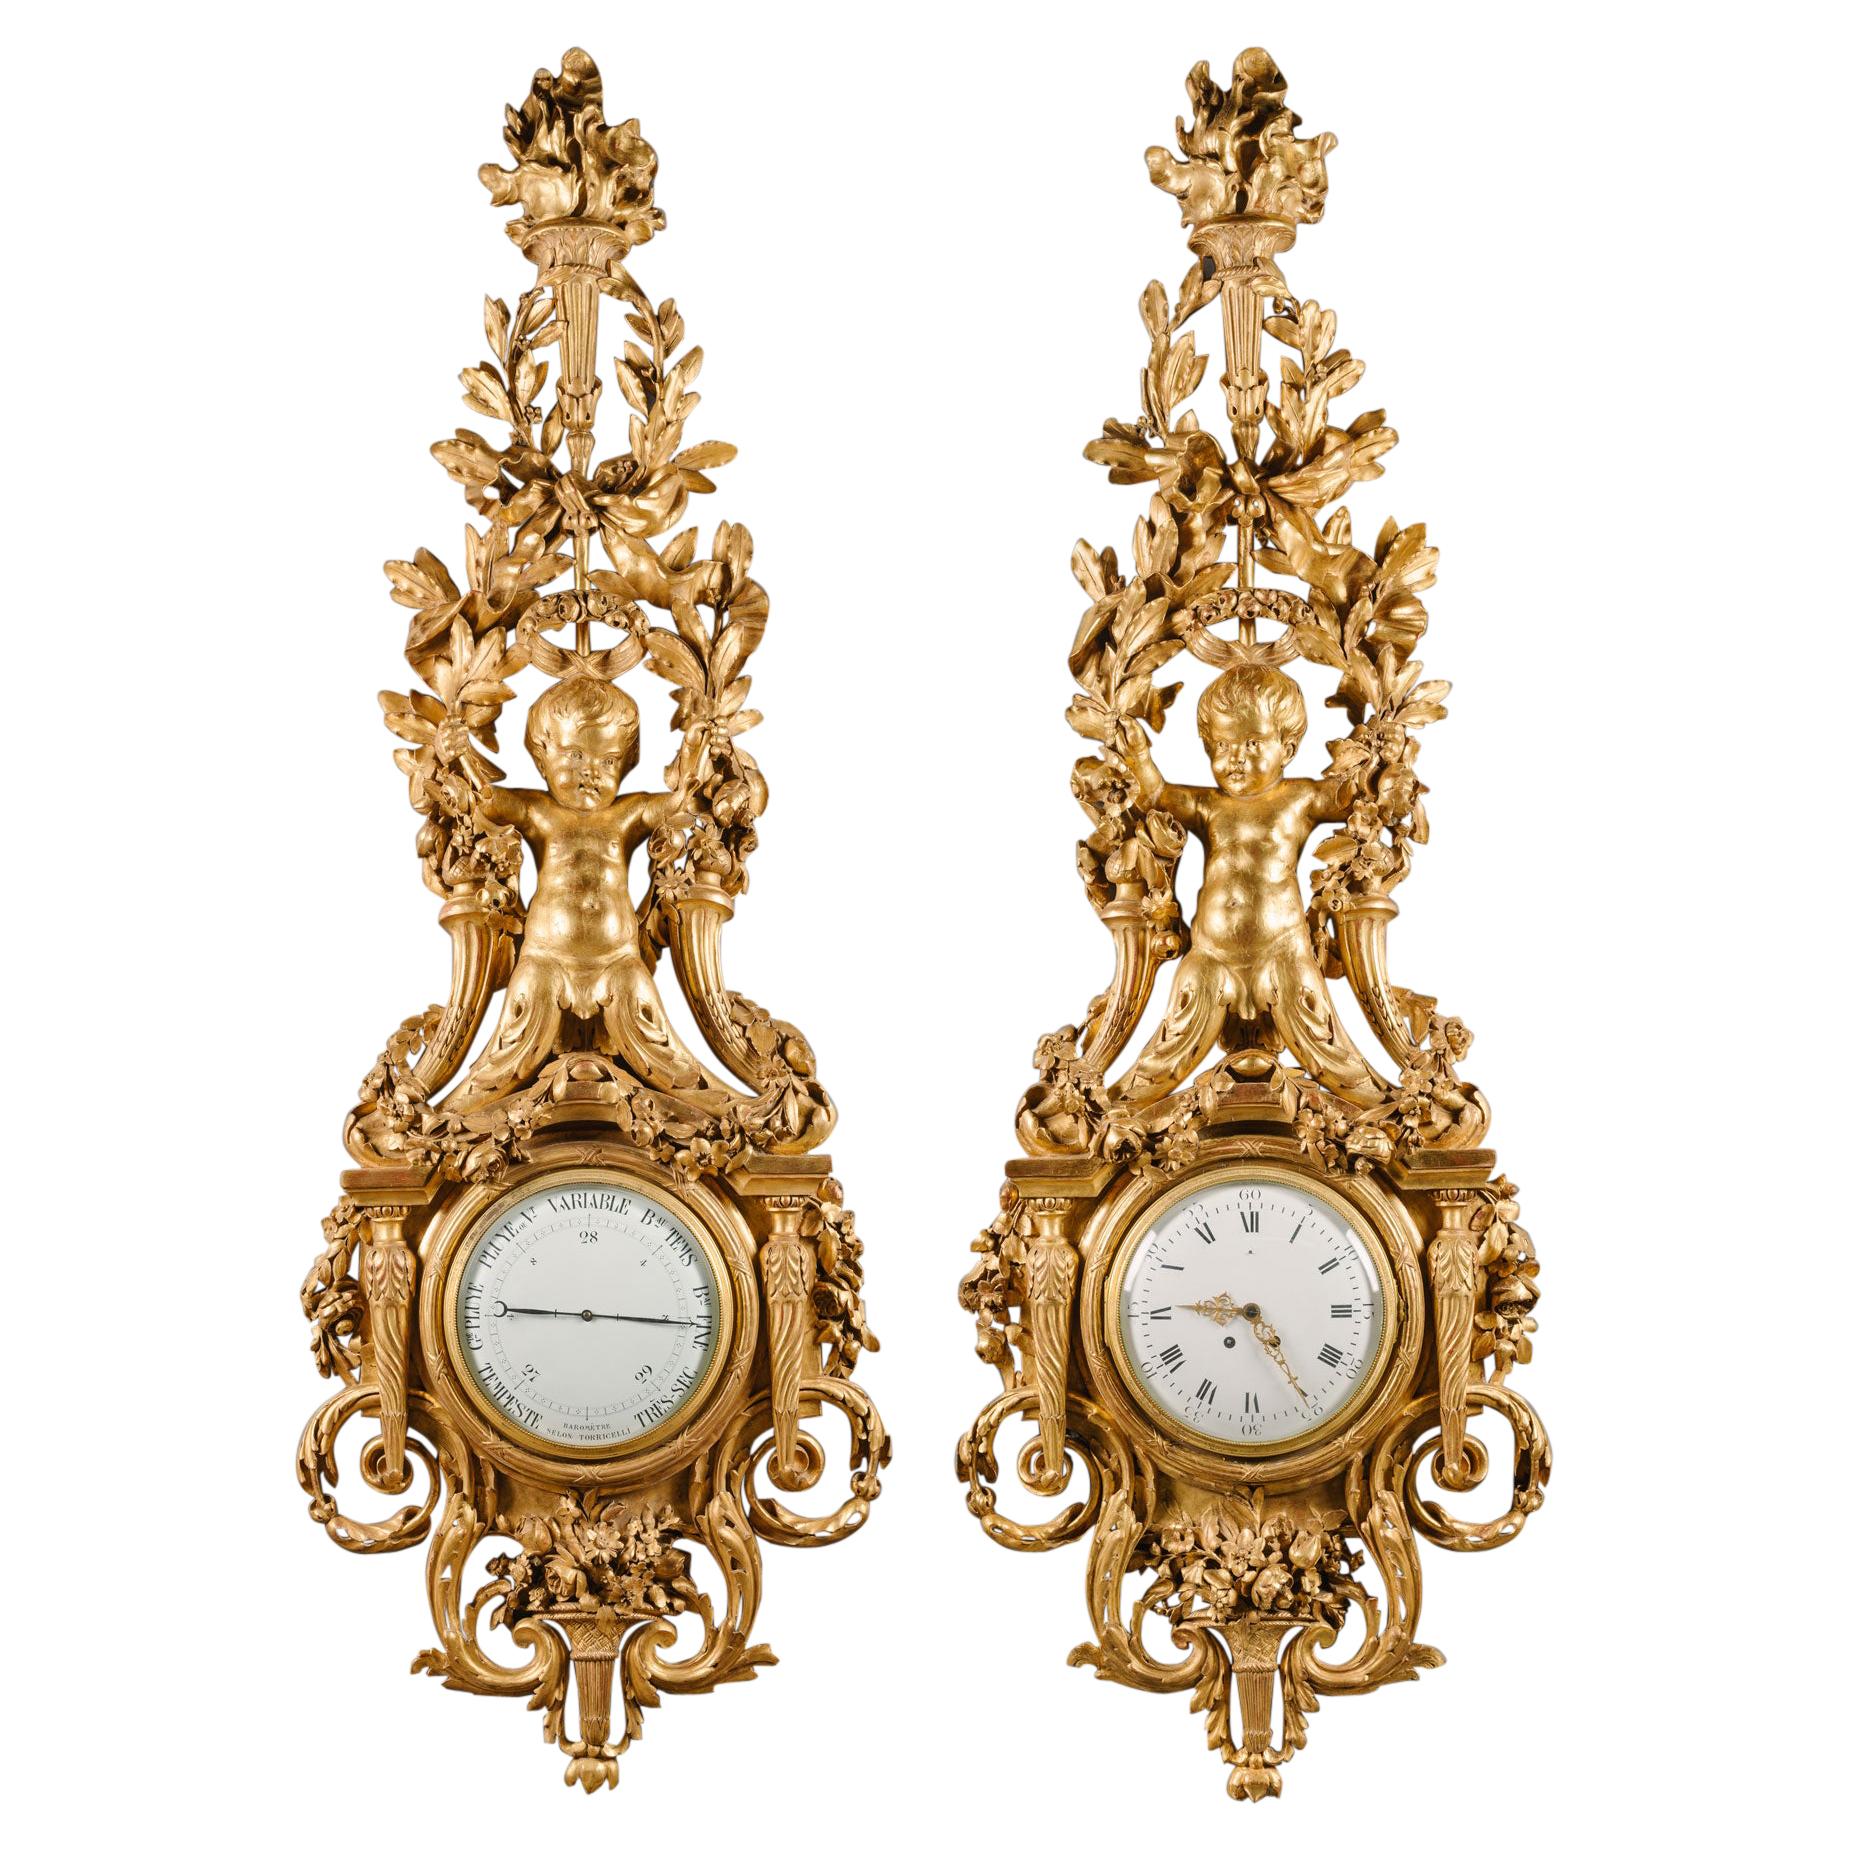 Grand ensemble d'horloge et de baromètre en bois doré sculpté de style Louis XVI